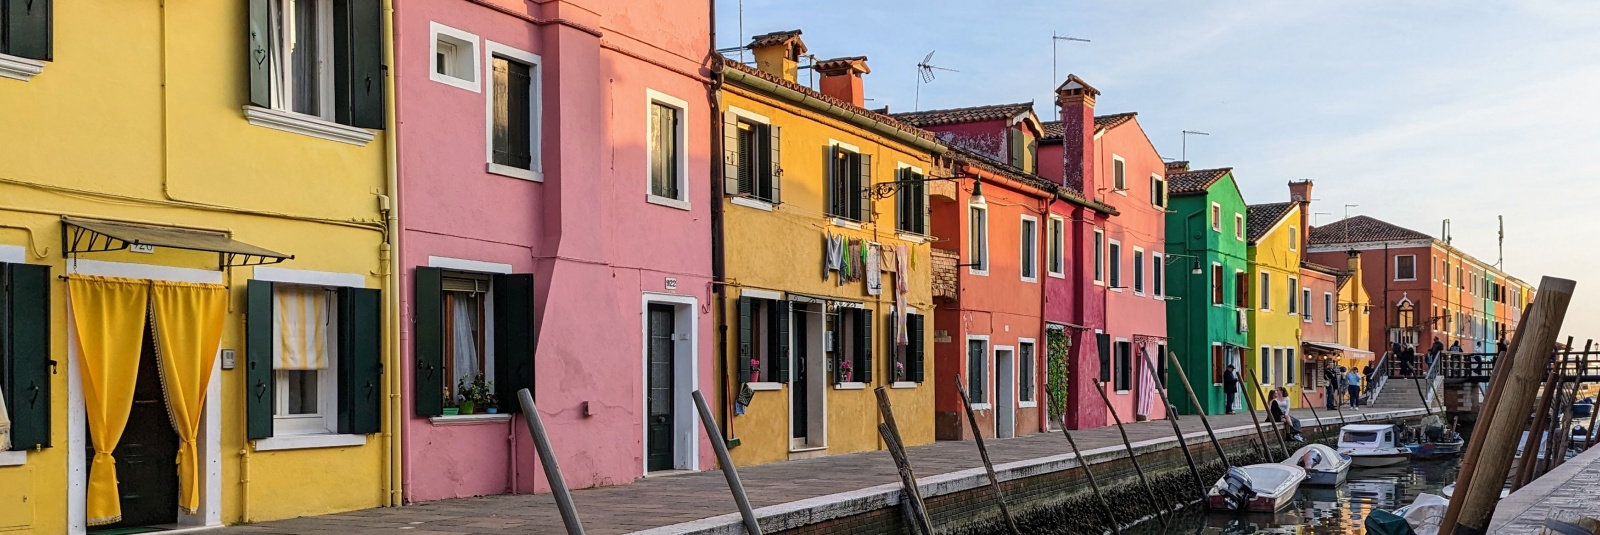 Excursie la insulele Murano, Burano și Torcello